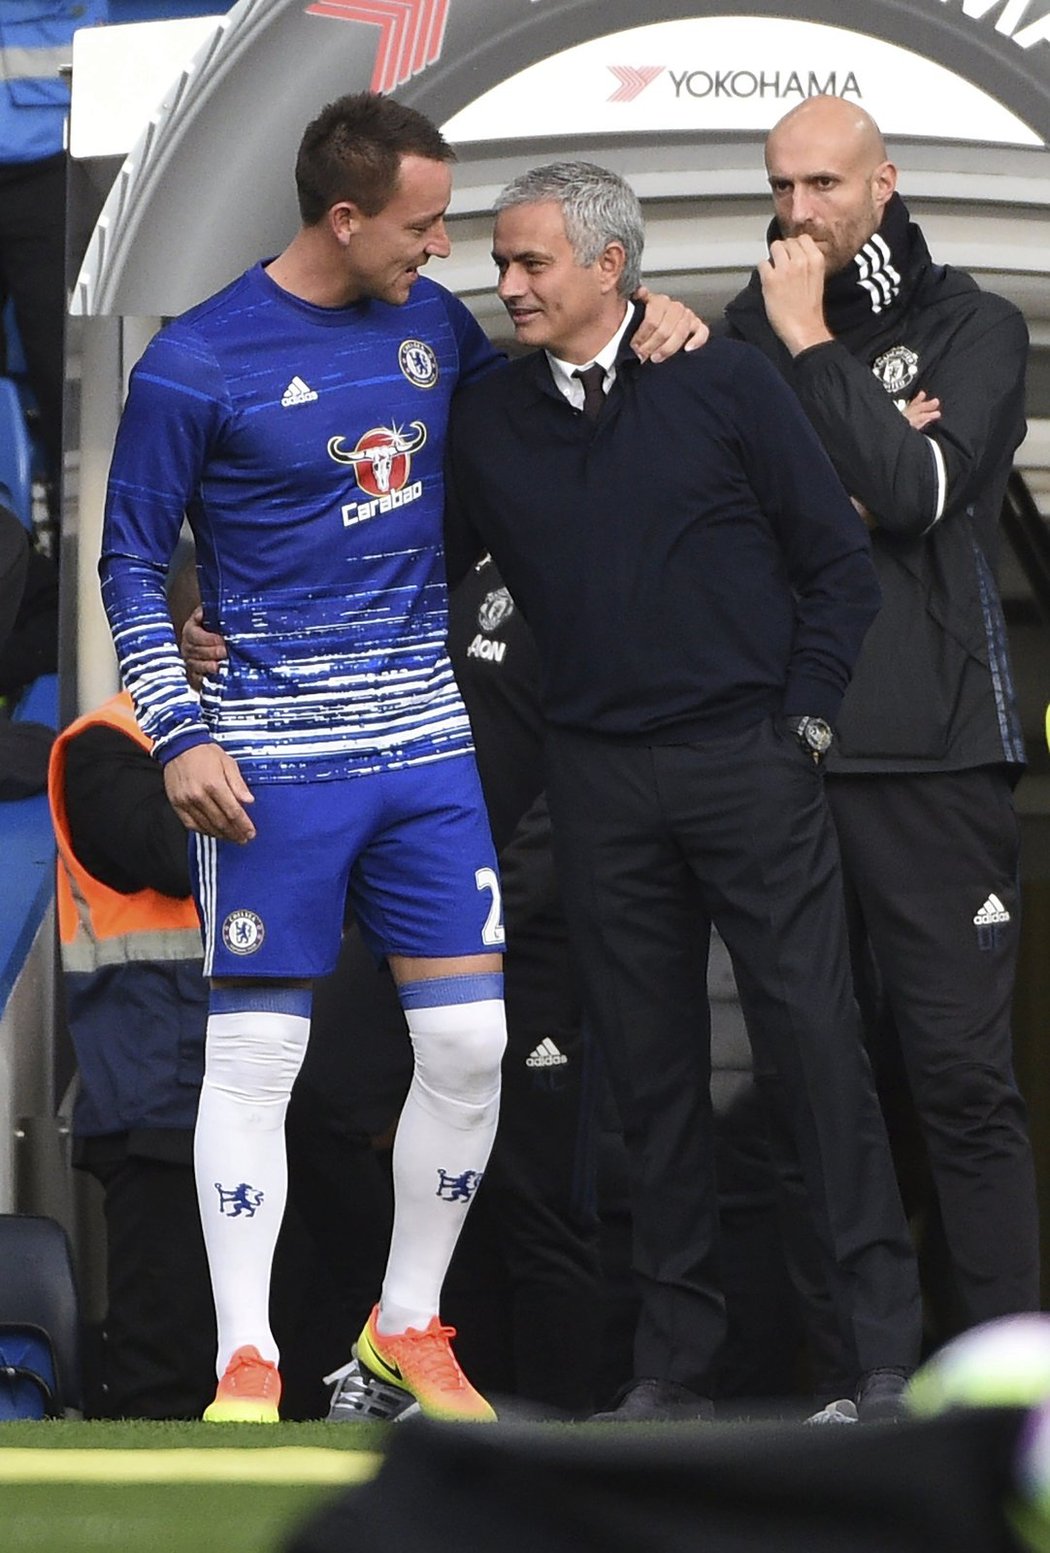 Ještě před výkopem se obránce Chelsea John Terry pozdravil se svým bývalým koučem Josém Mourinhem, který nyní trénuje Manchester United